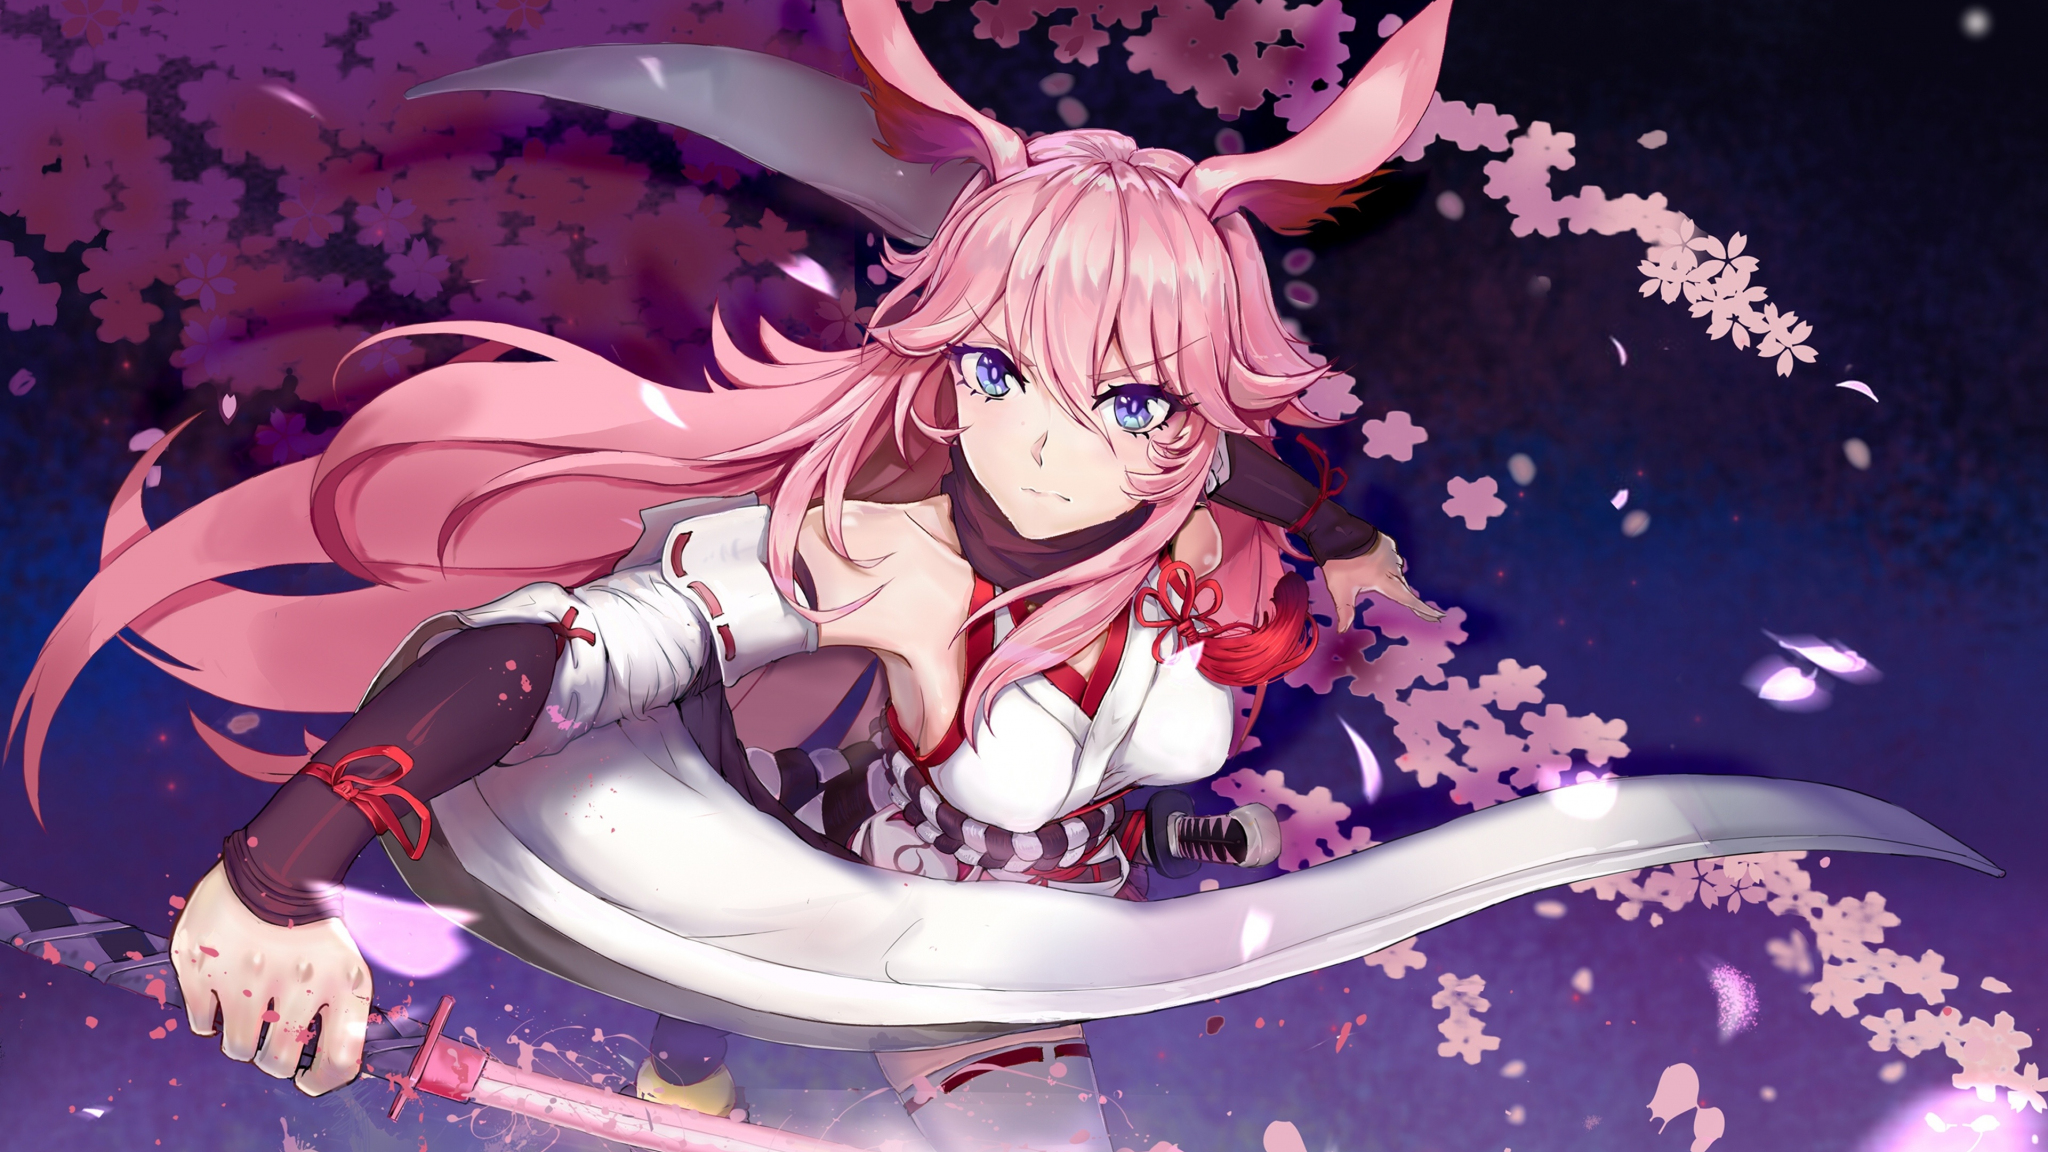 Download 2048x1152 Wallpaper Sakura Blossom Valkyrja